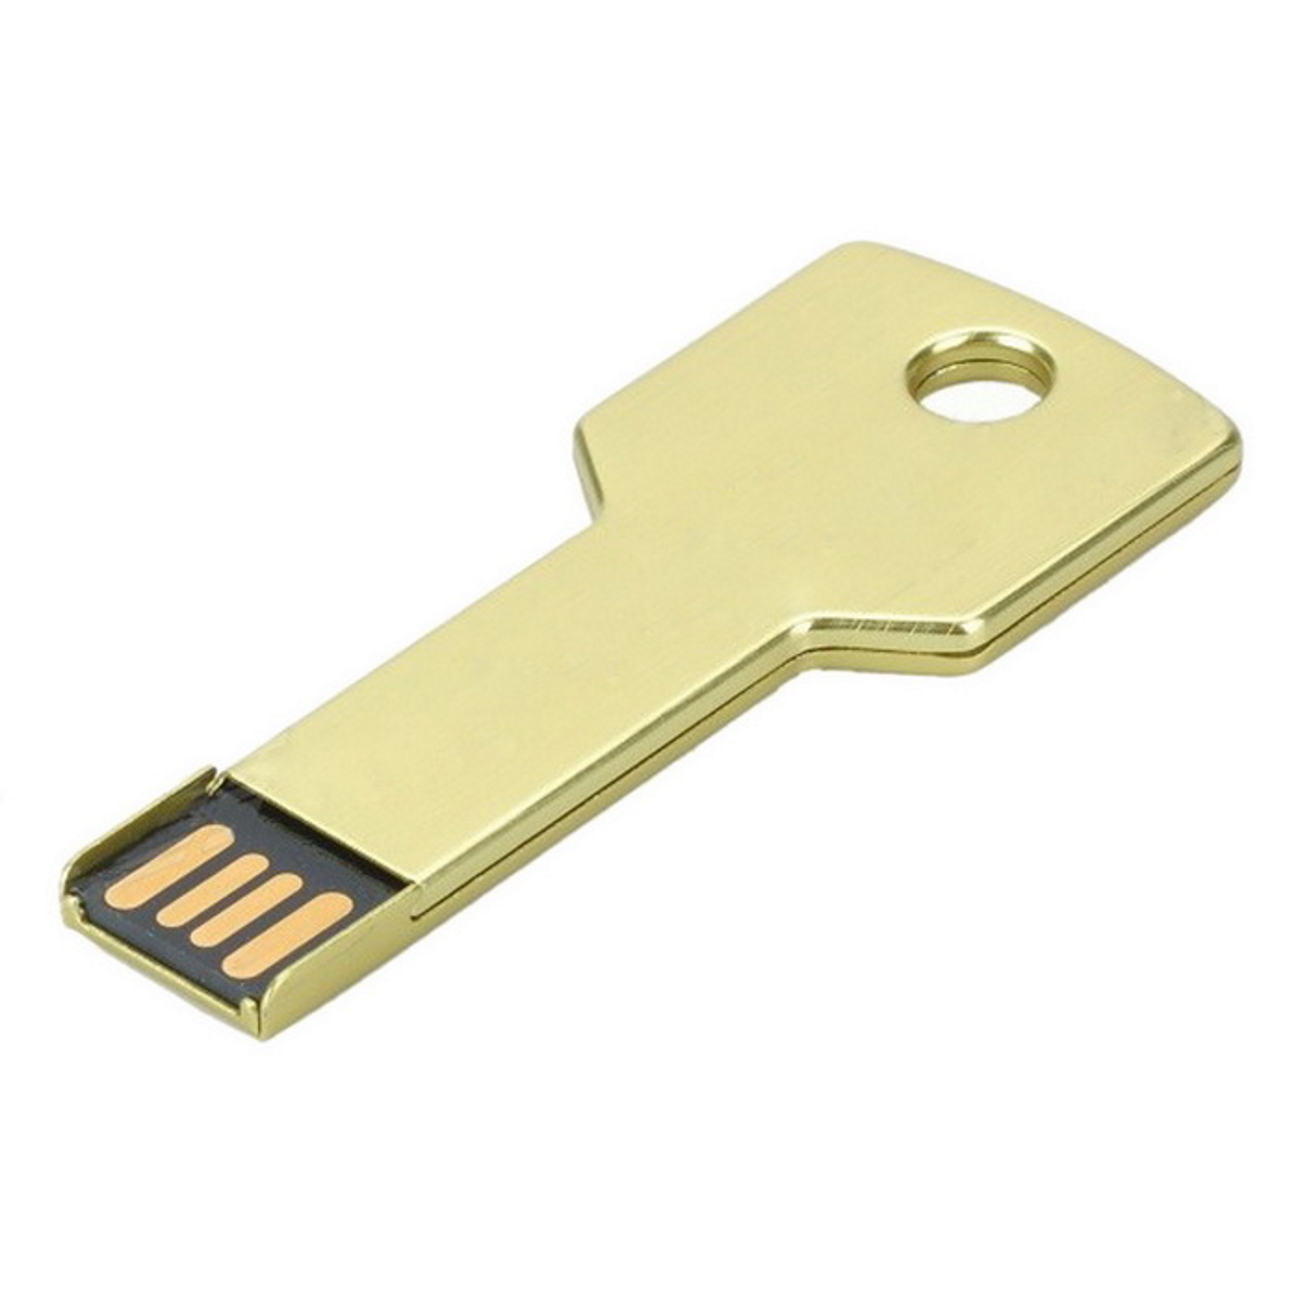 Gold GB) Key USB 2 USB-Stick 2GB GERMANY (Gold,